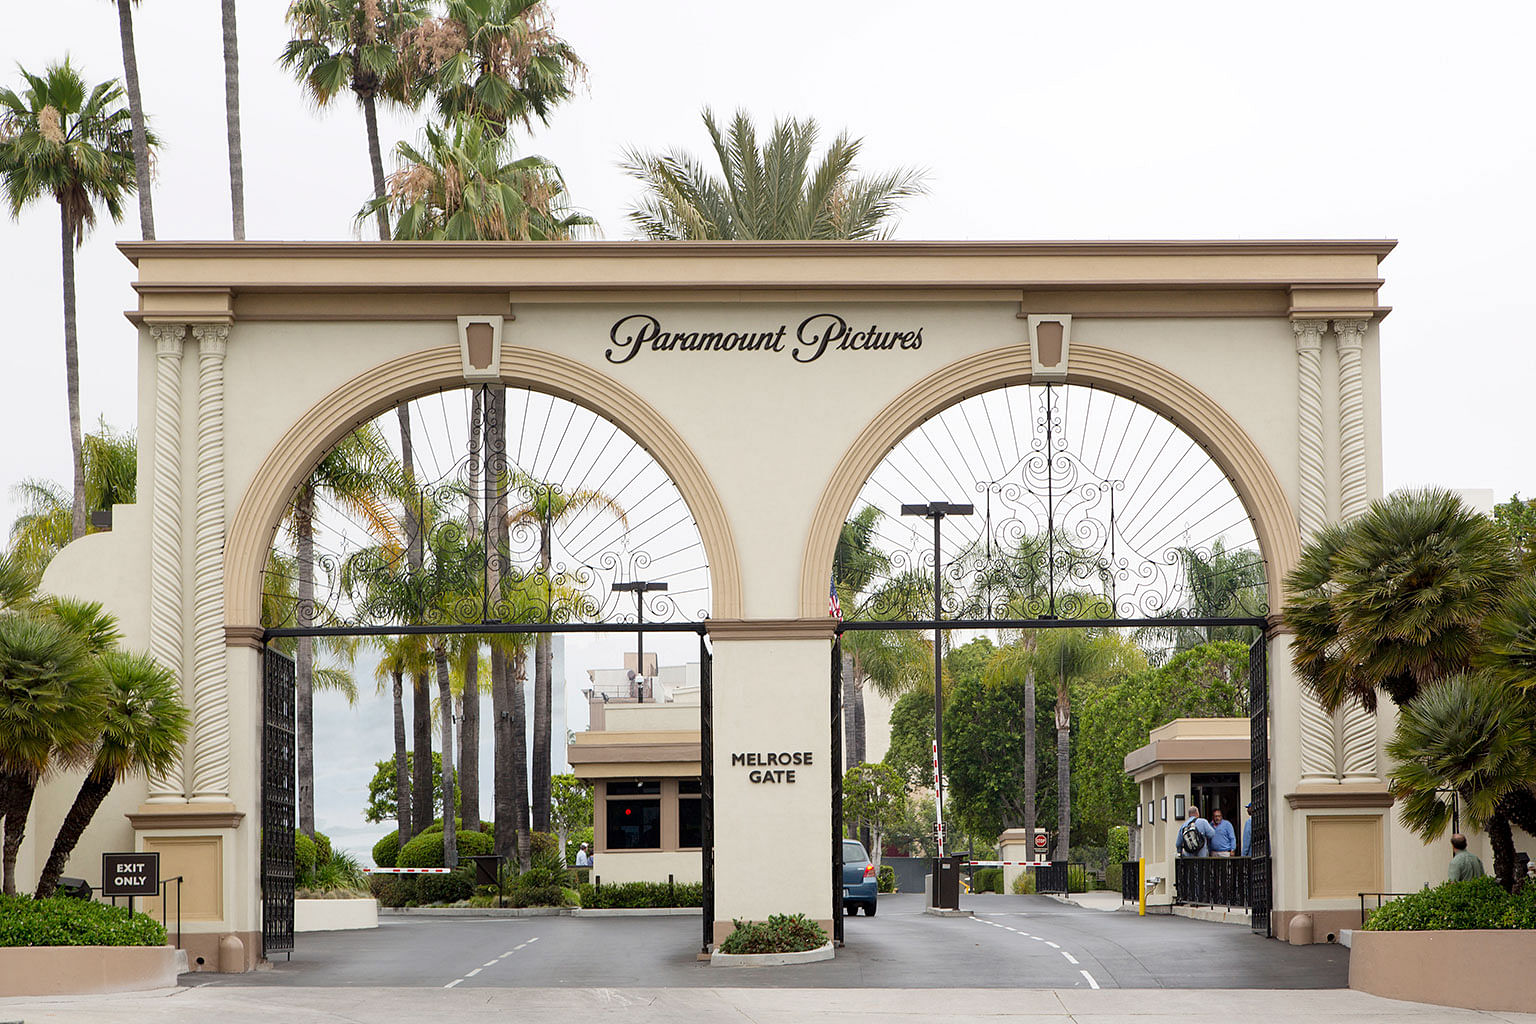 Entrance to Paramount Studios in Los Angeles